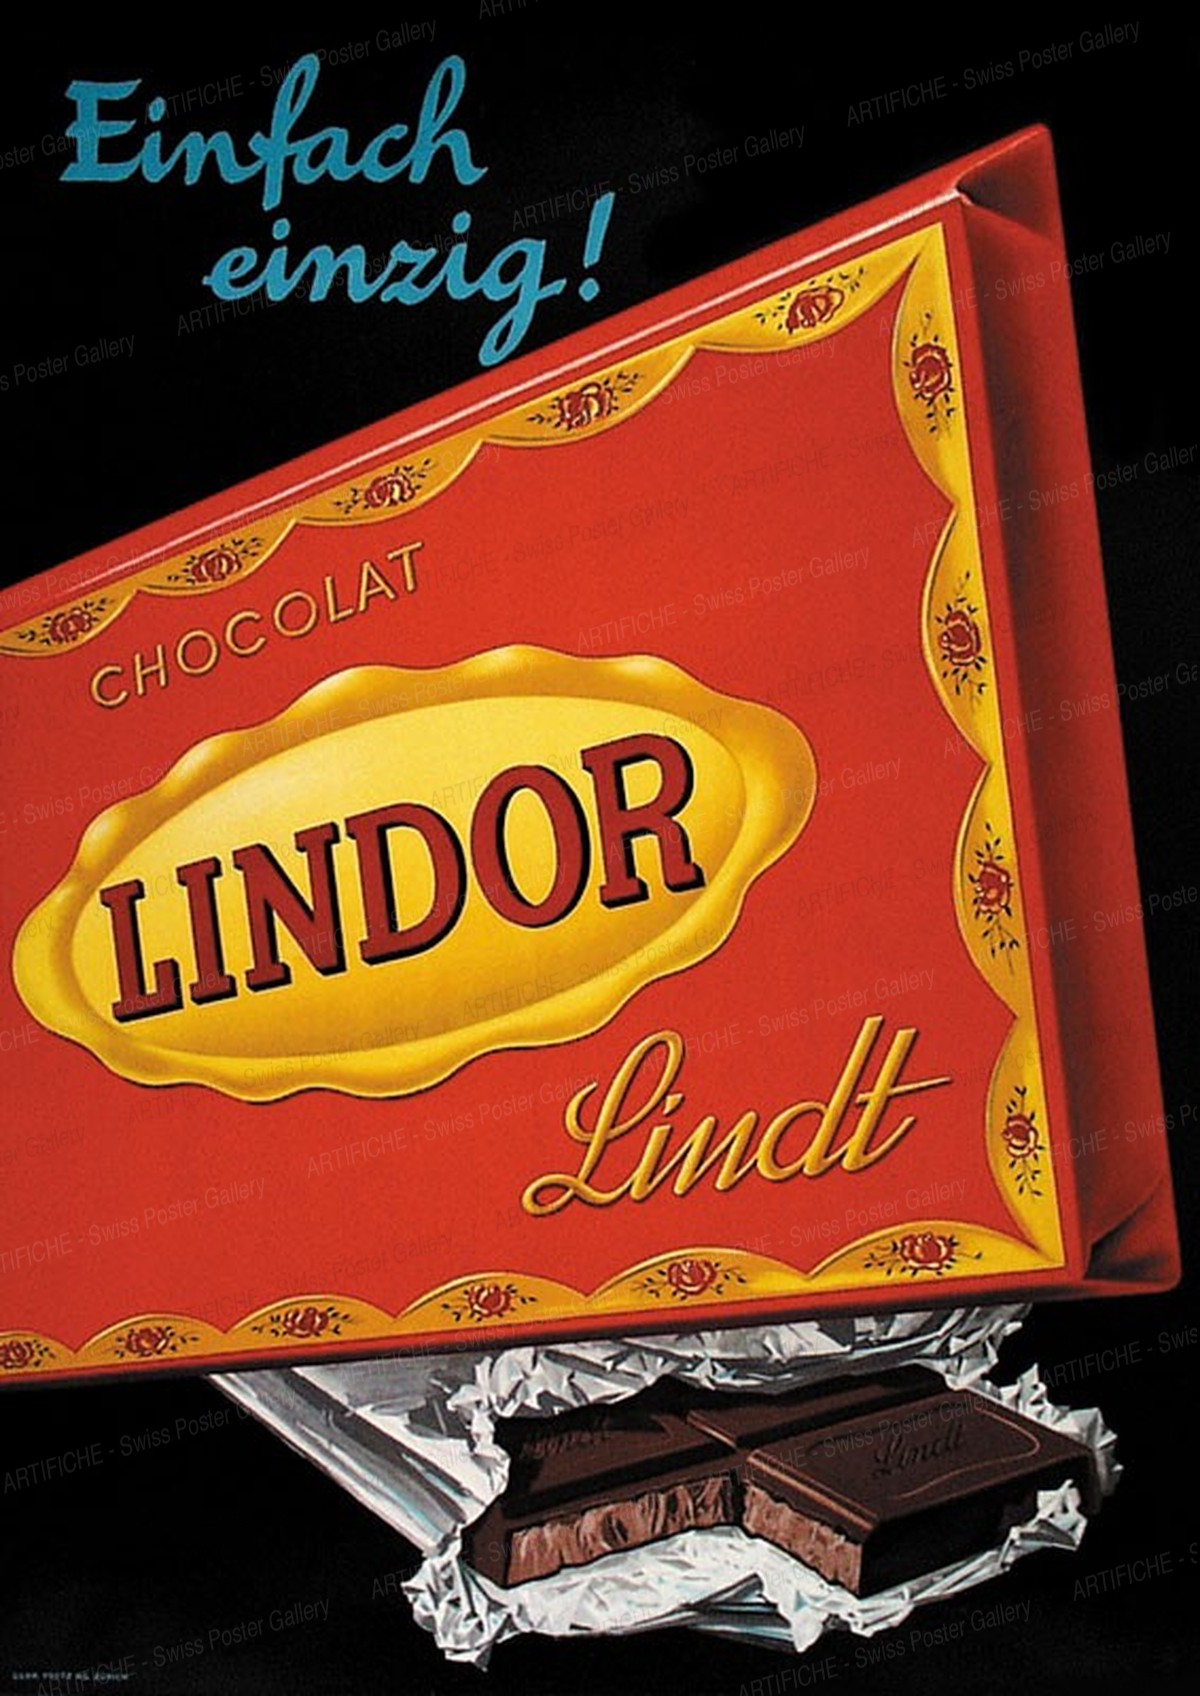 Lindt Milk Chocolate LINDOR, Artist unknown